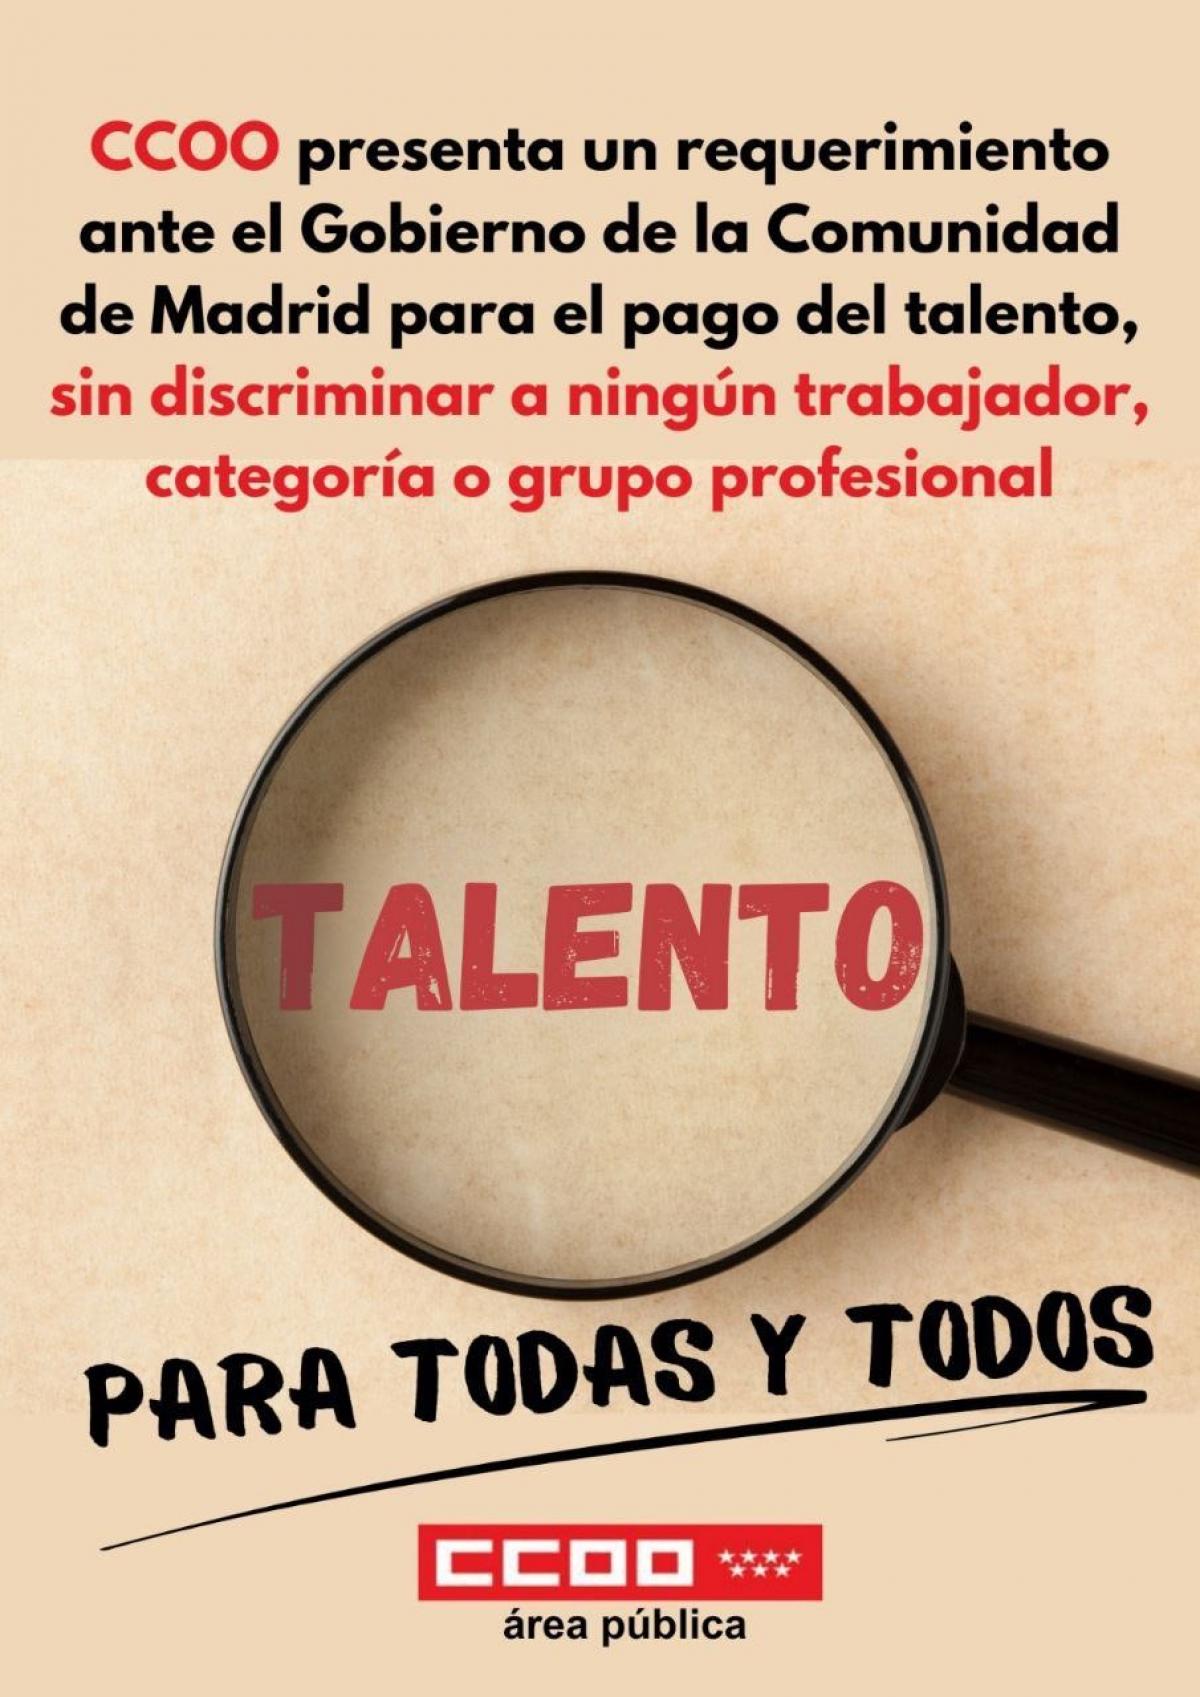 CCOO presenta requerimiento ante el Gobierno de la Comunidad de Madrid para que negocie y ajuste a derecho la retribucin del talento, antes de ir a los tribunales